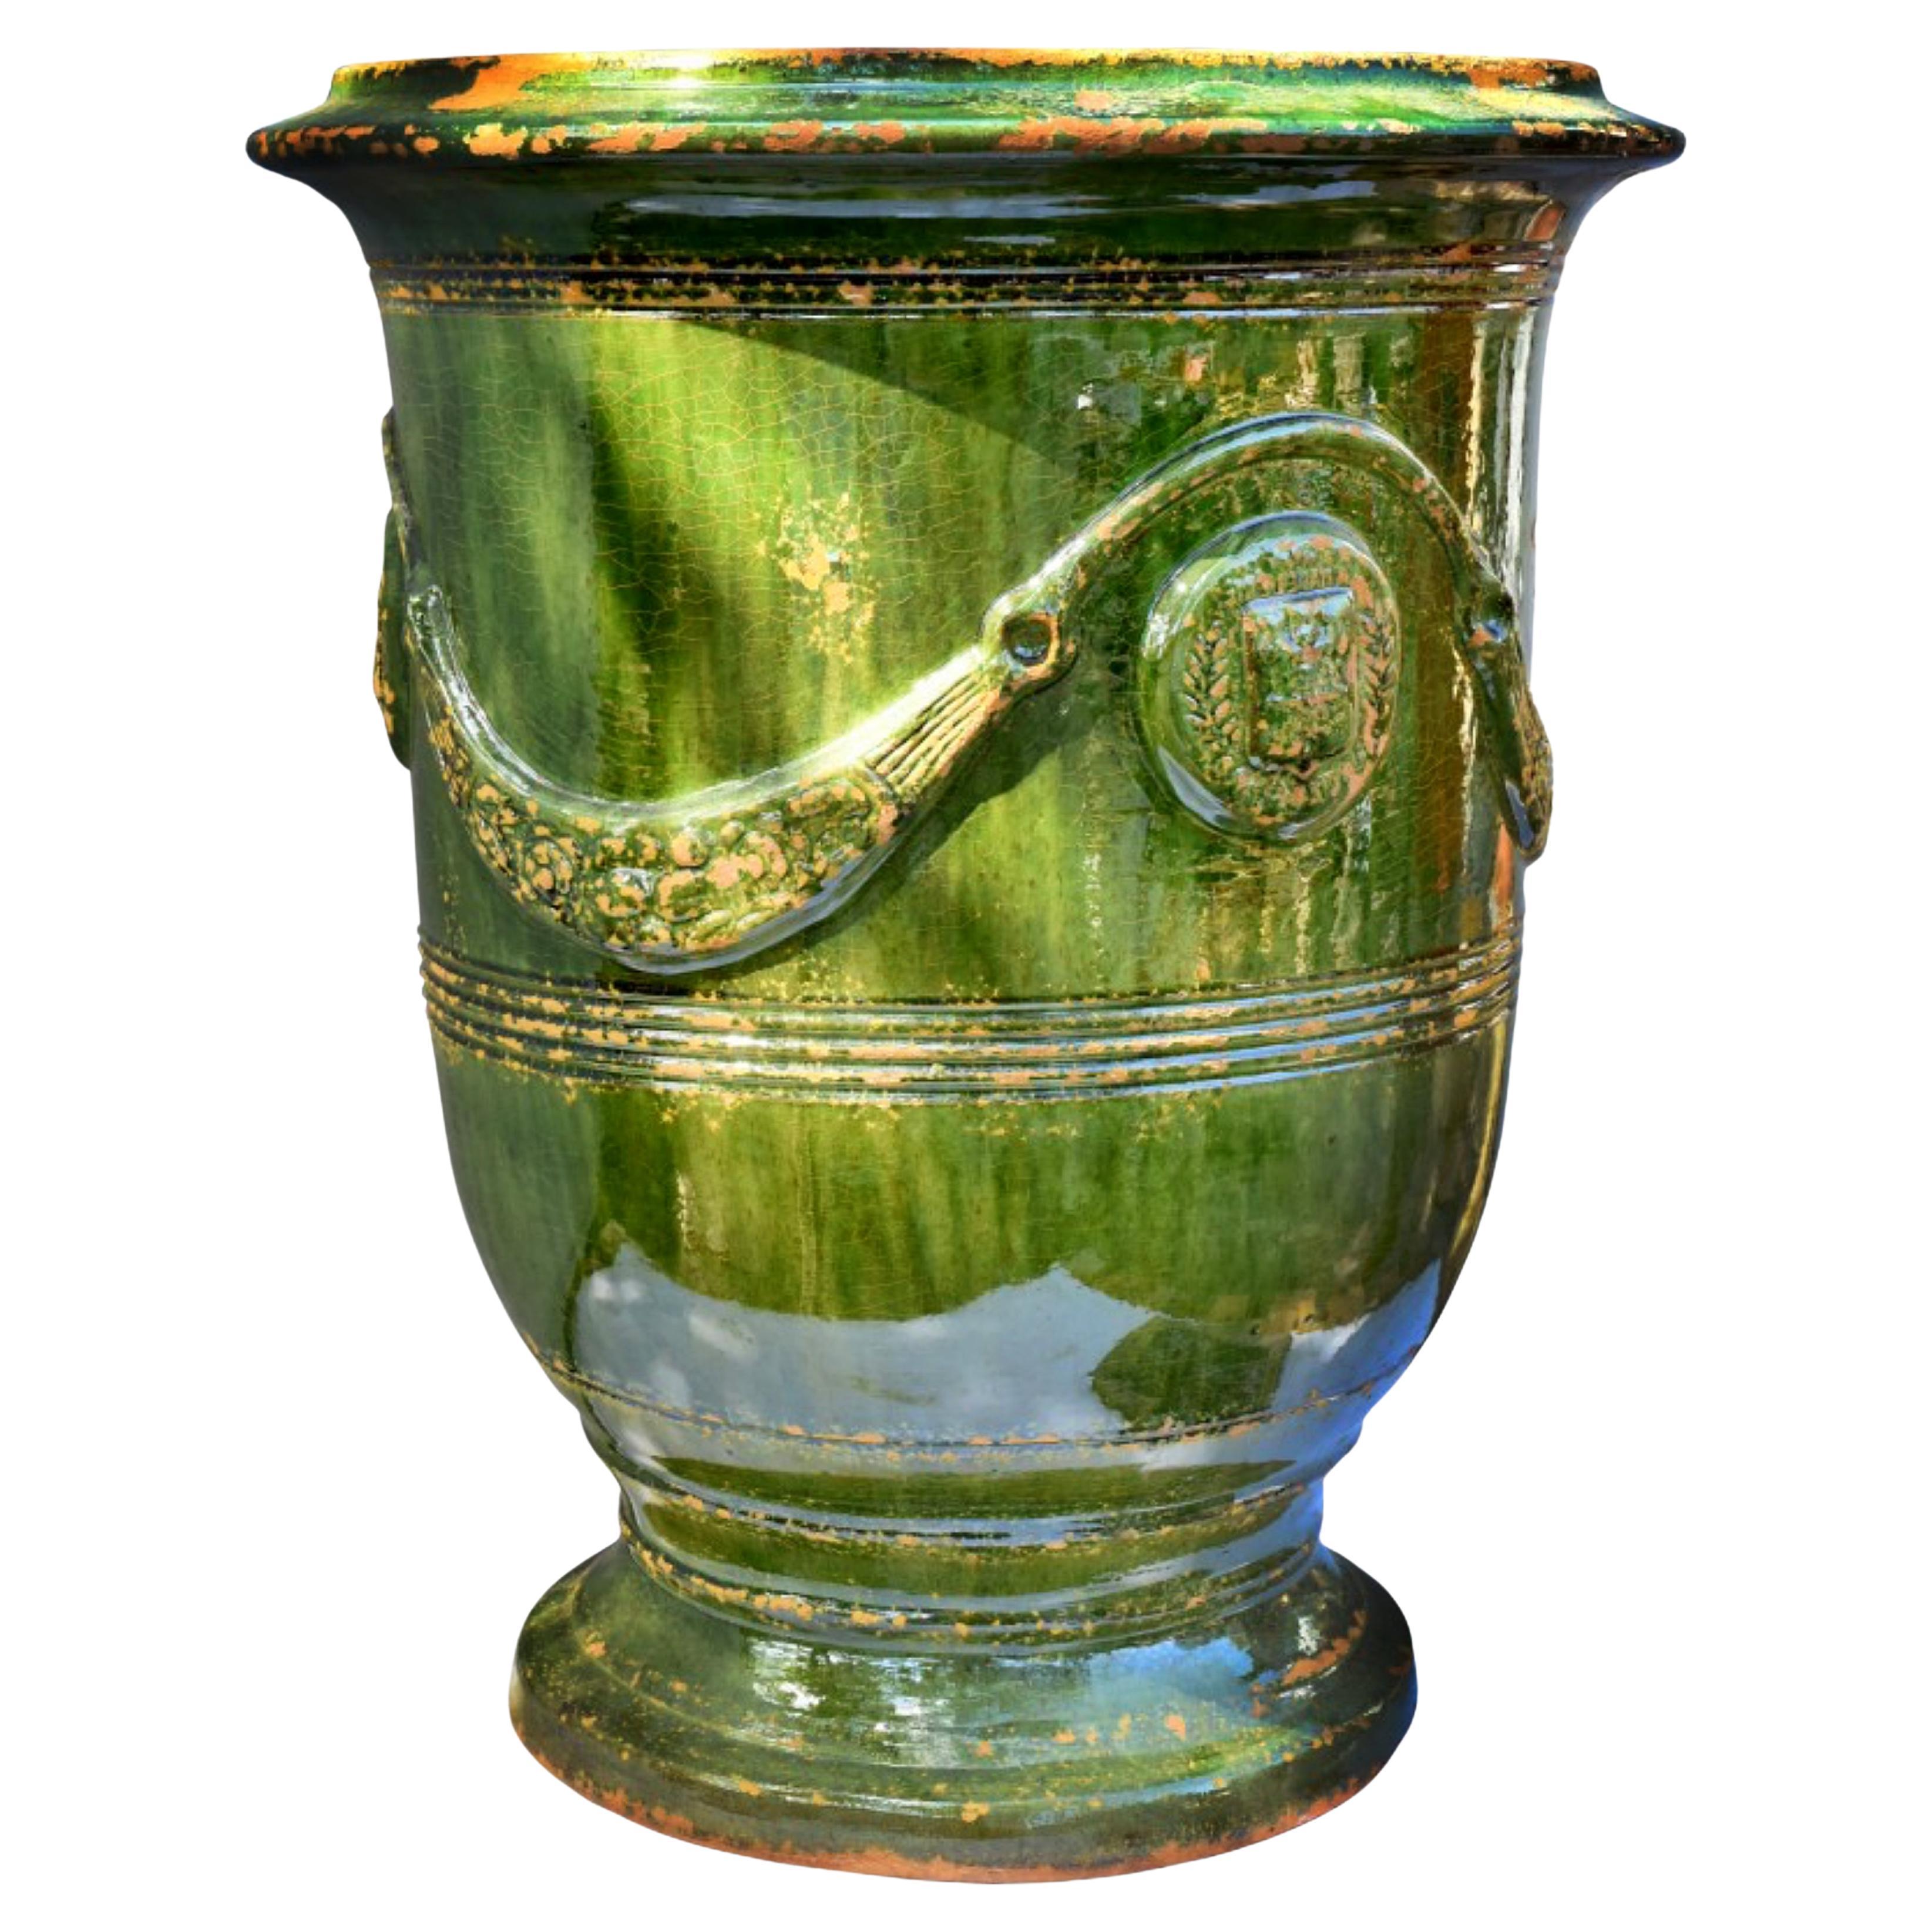 Vase en majolique des Cévennes (France) début 20ème siècle